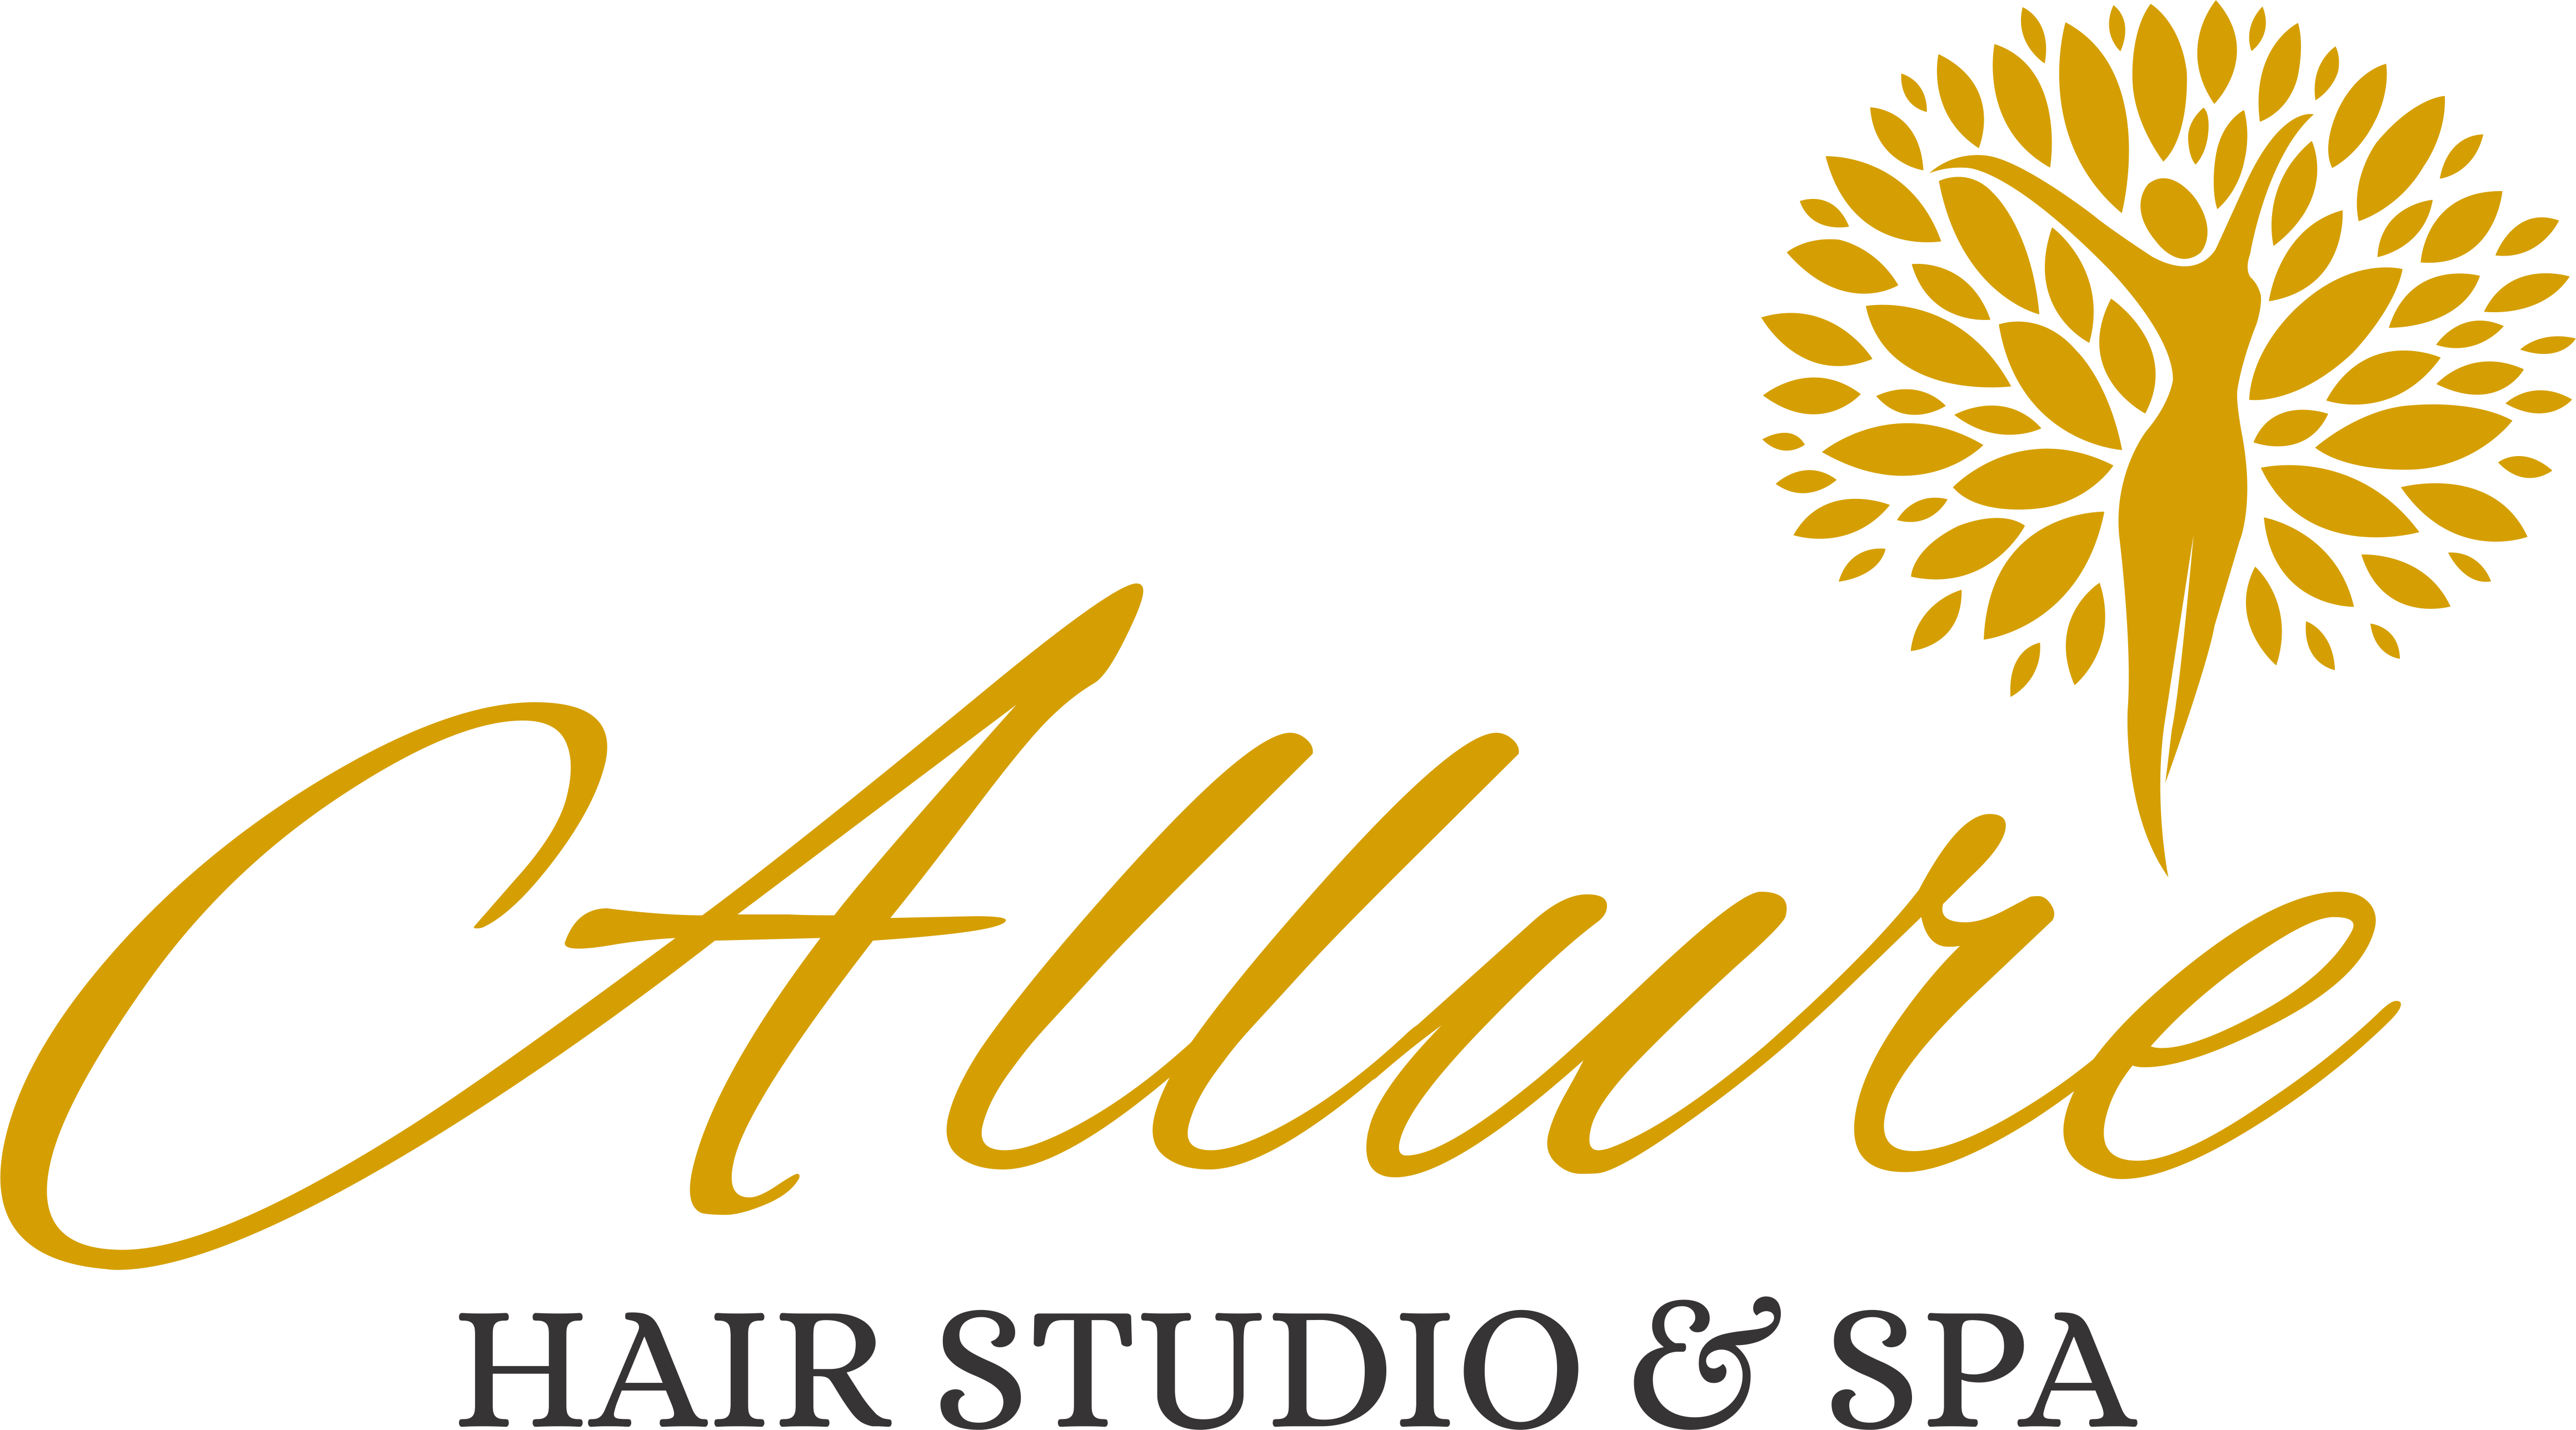 Allure Hair Salon & Spa Logo